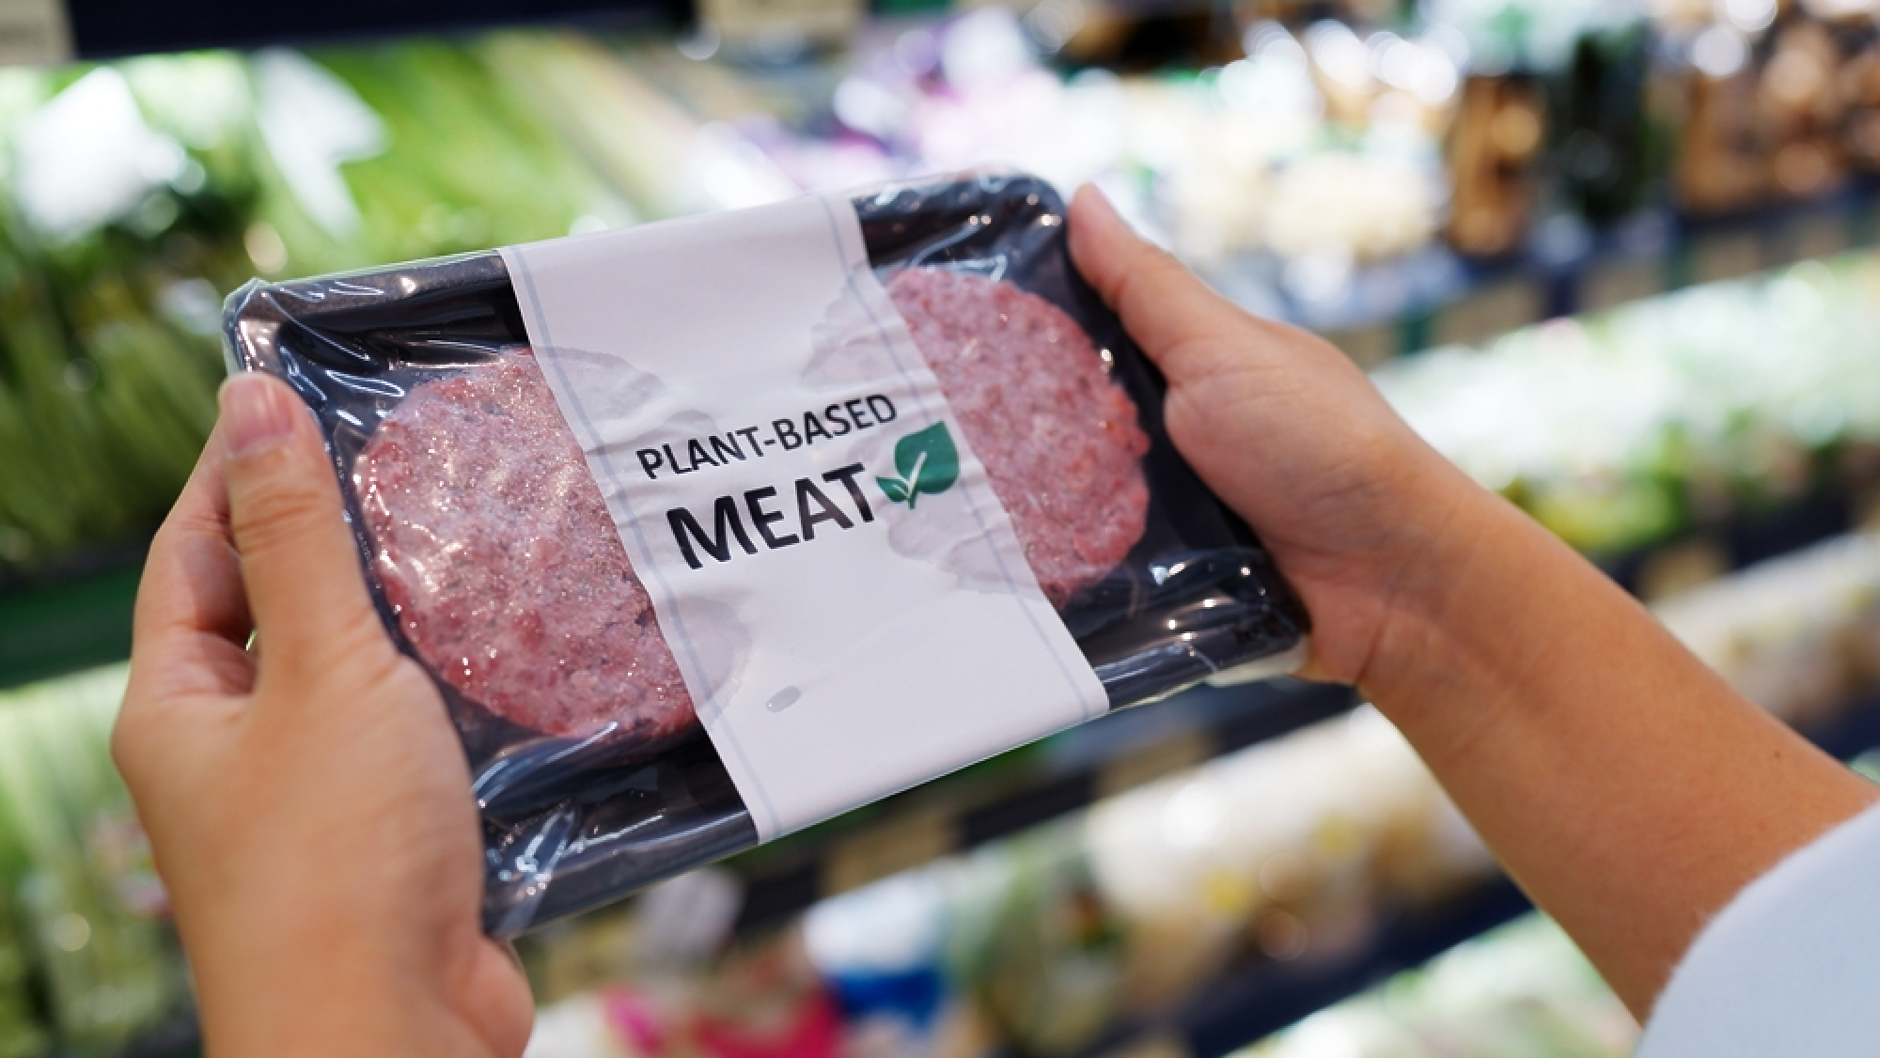 Италия забрани производството и продажбата на изкуствено месо